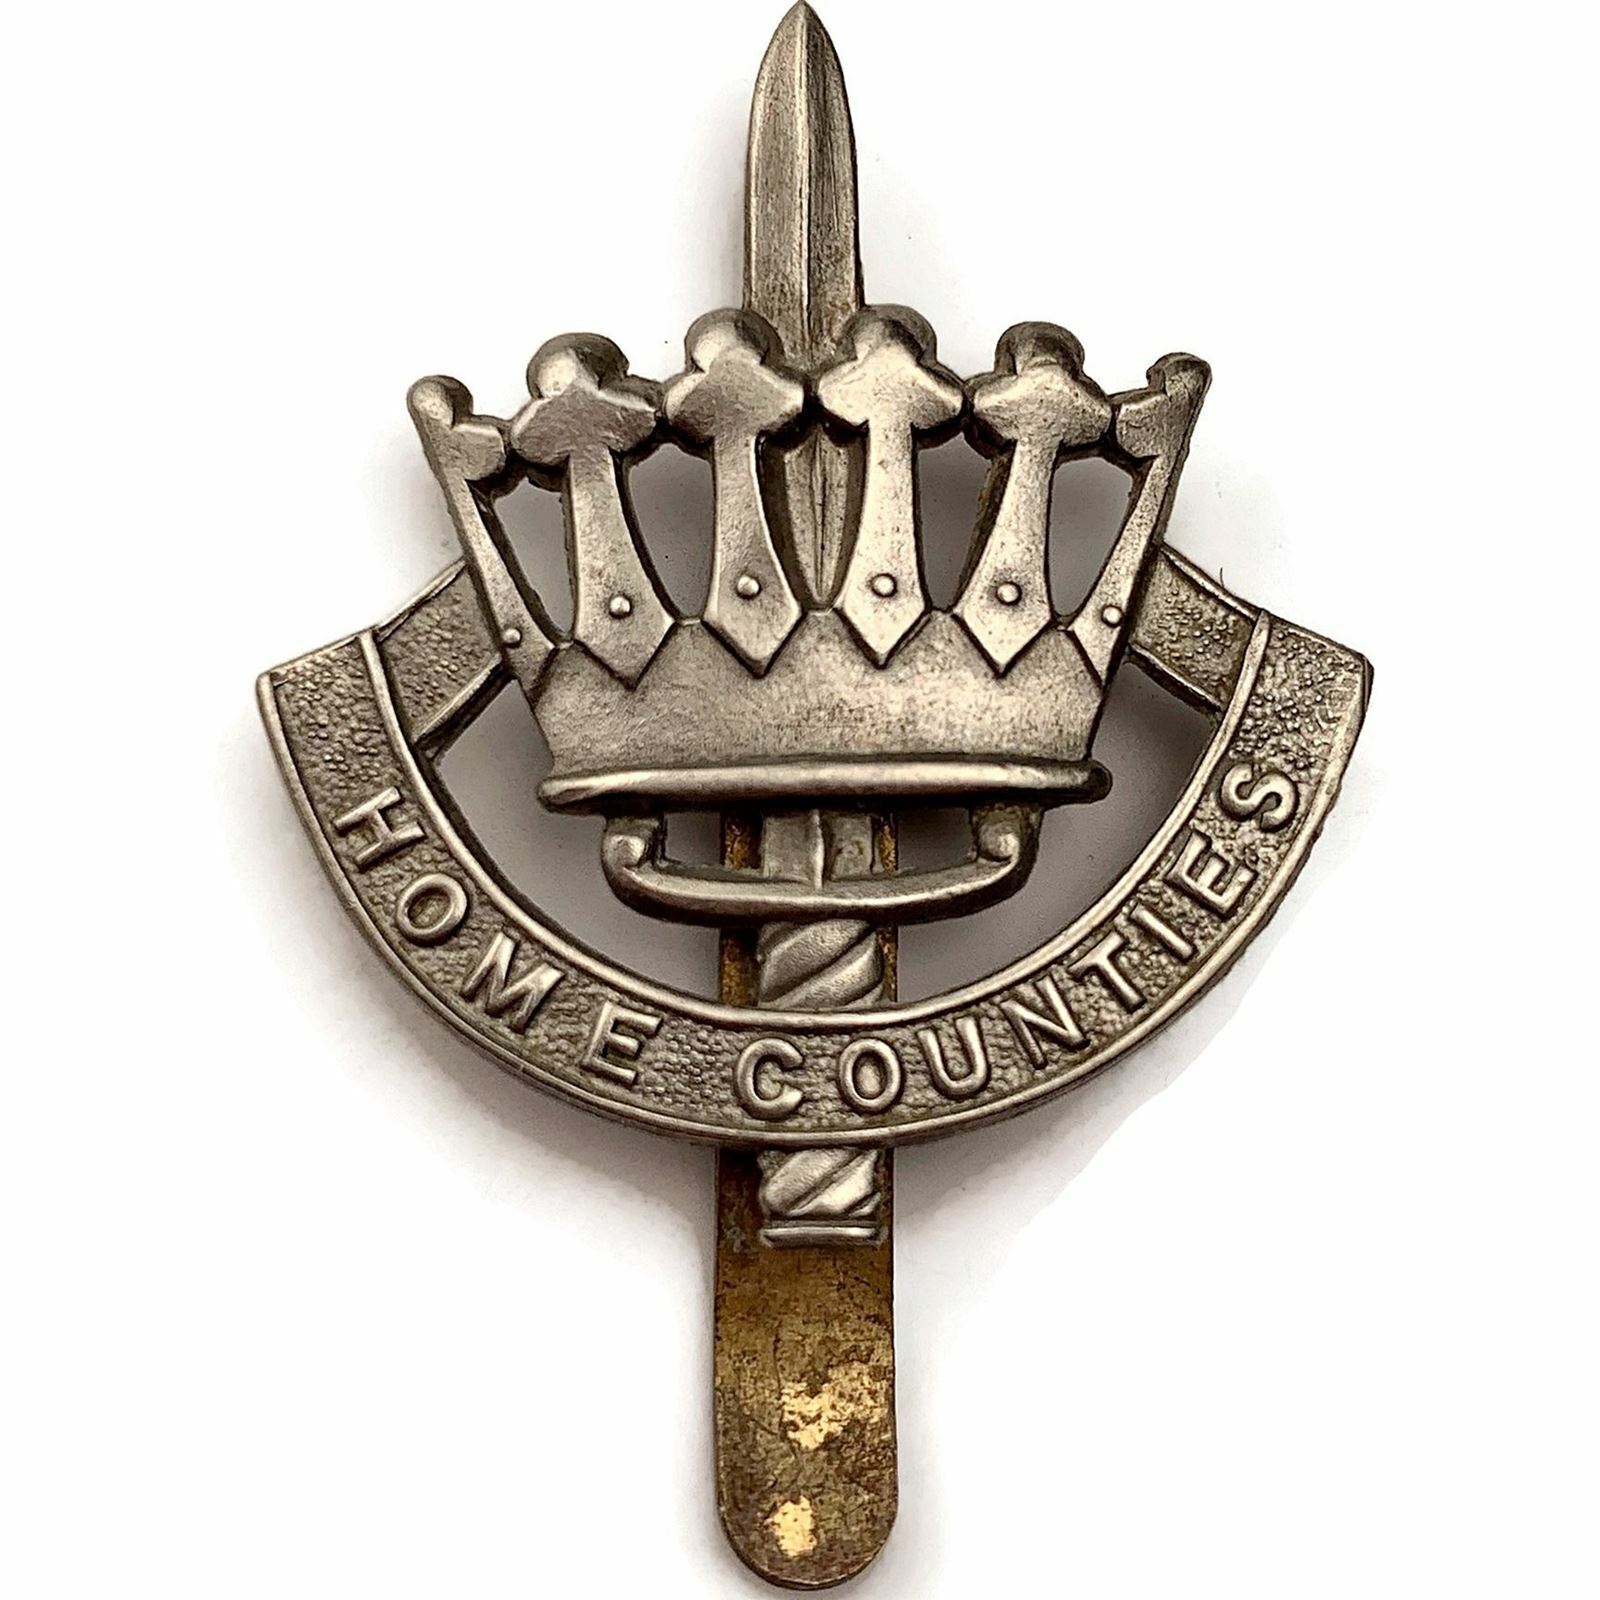 Original Home Counties Infantry Brigade METAL Cap Badge - 1948-1969